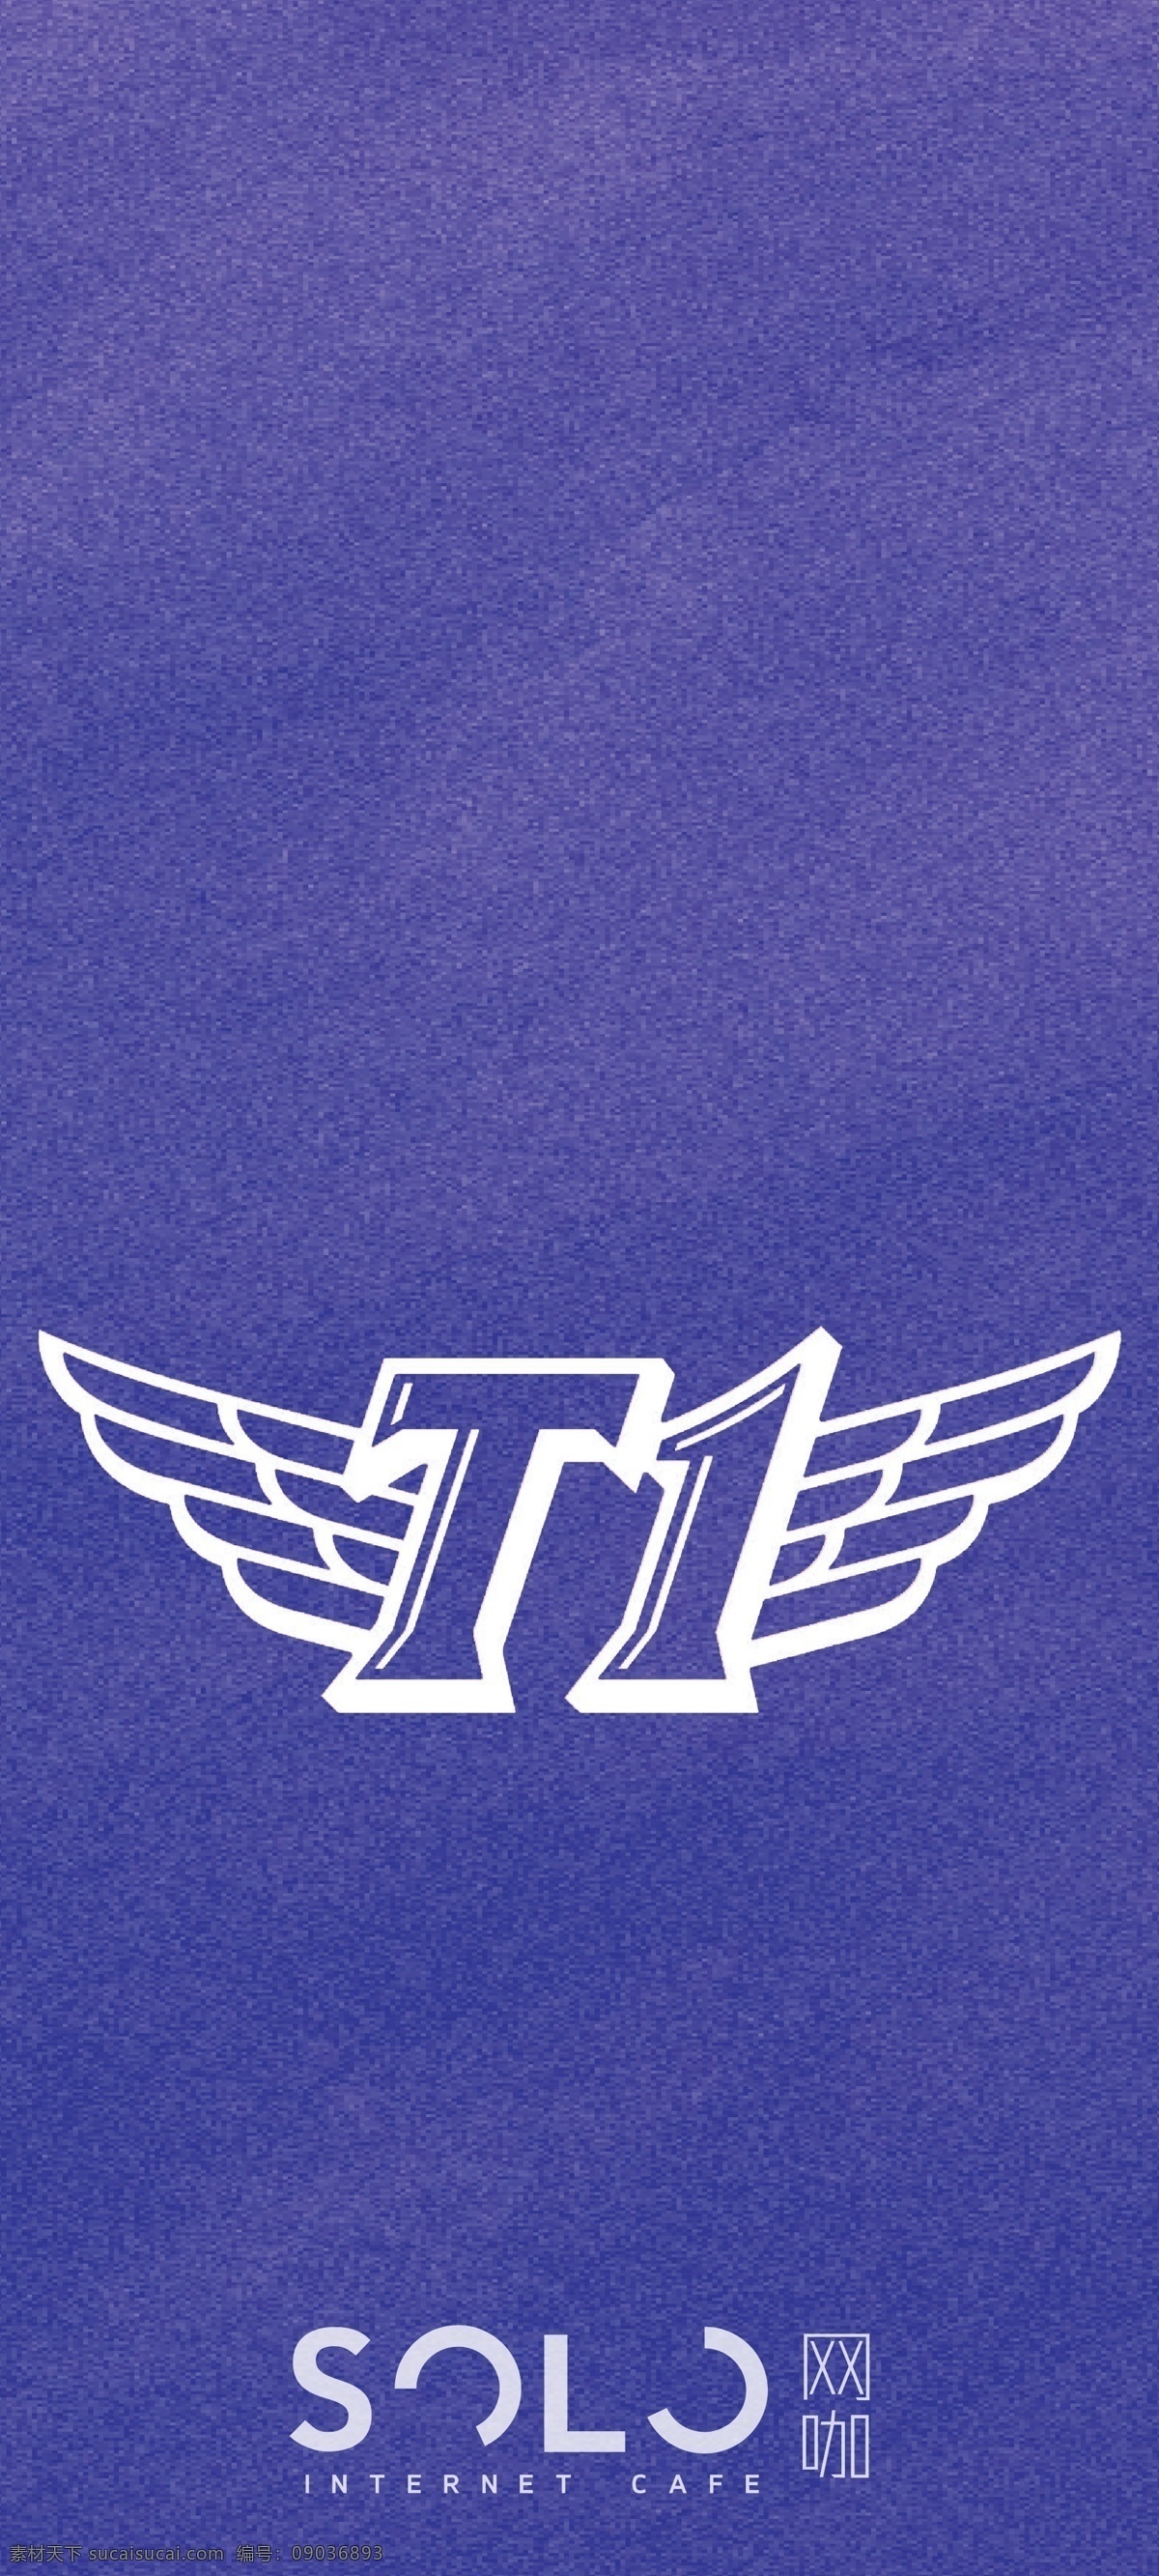 网吧标志图片 网吧标志 网吧logo 游戏标志 游戏logo 战队标志 lpl lol 英雄 skt t1 logo设计